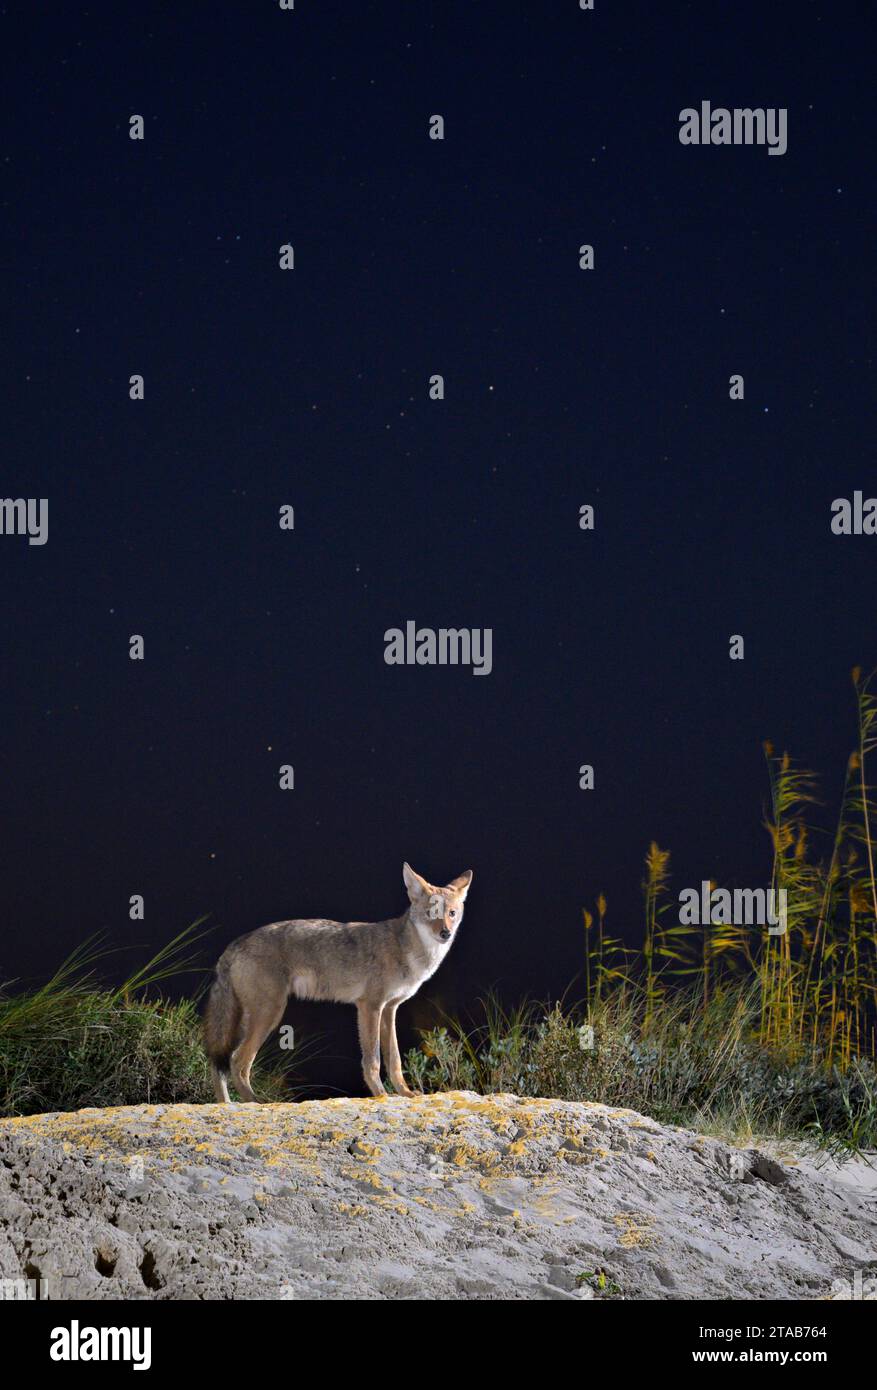 Kojote (Canis latrans) auf der Sanddüne bei Nacht unter Sternenhimmel, Galveston, Texas. Man nimmt an, dass diese Population Gene des Roten Wolfs (Canis rufus) besitzt. Stockfoto